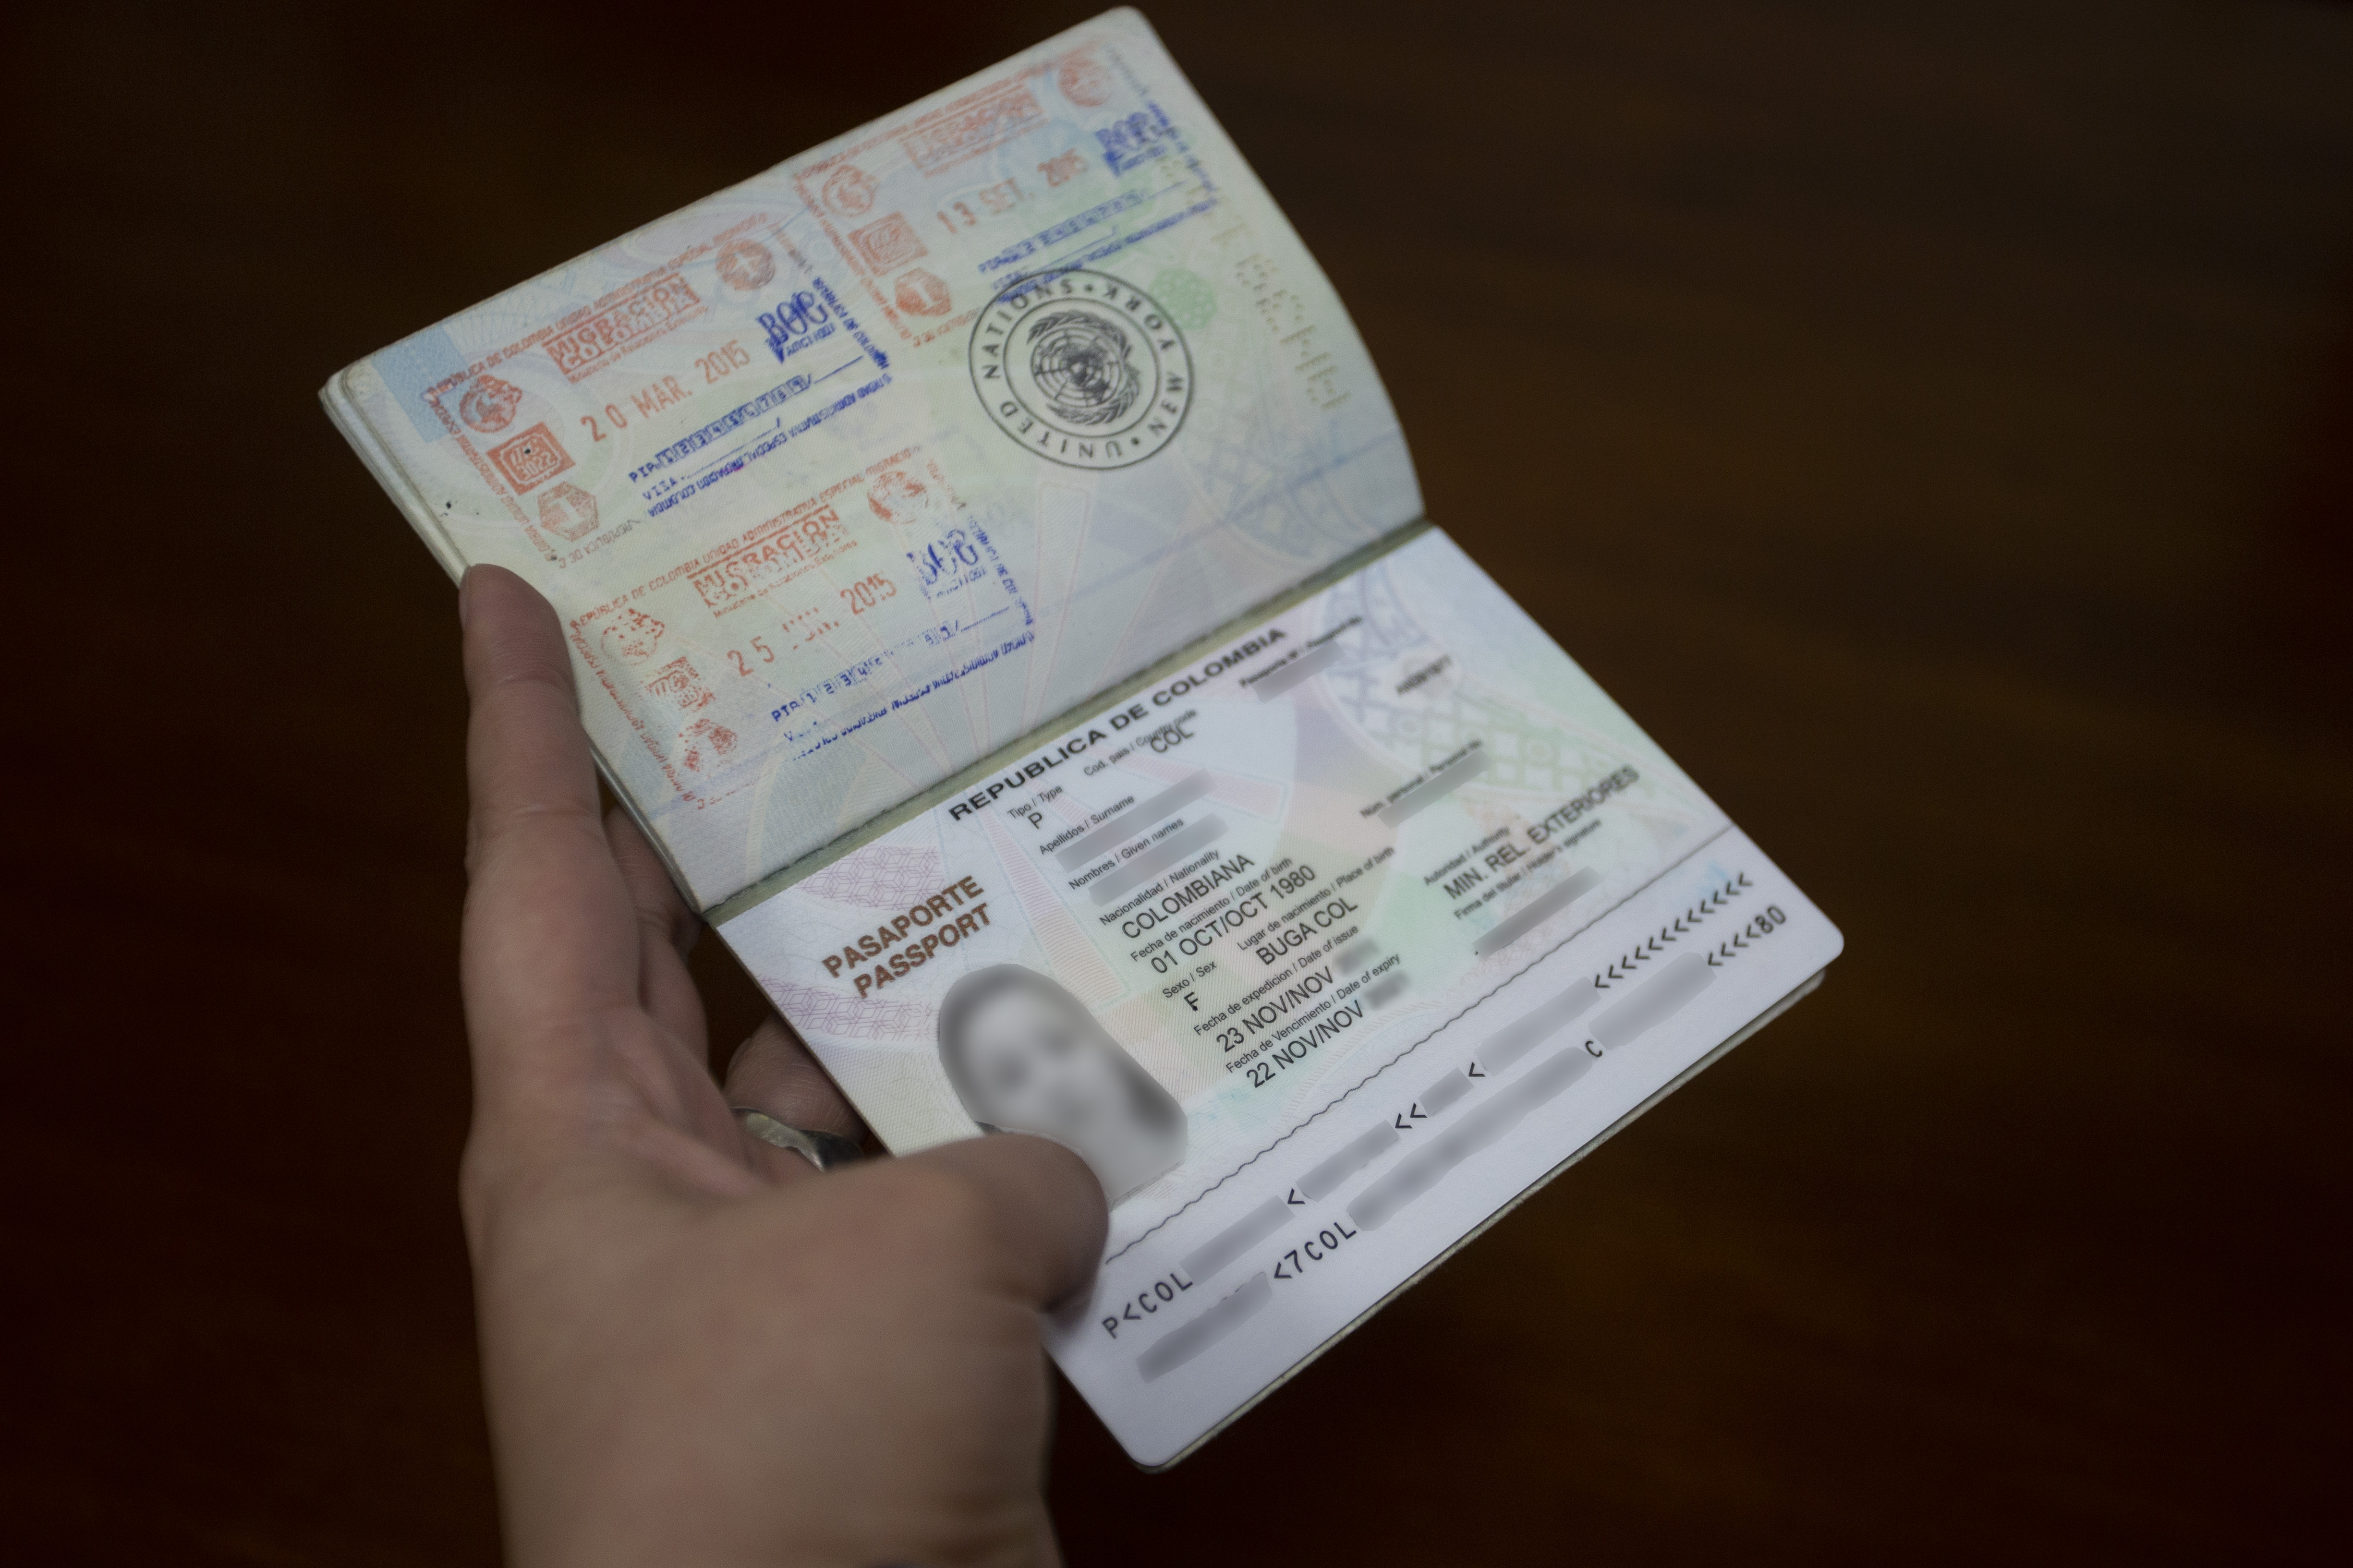 Si va a salir de Colombia revise su pasaporte y evite inconvenientes por no tener el documento en regla